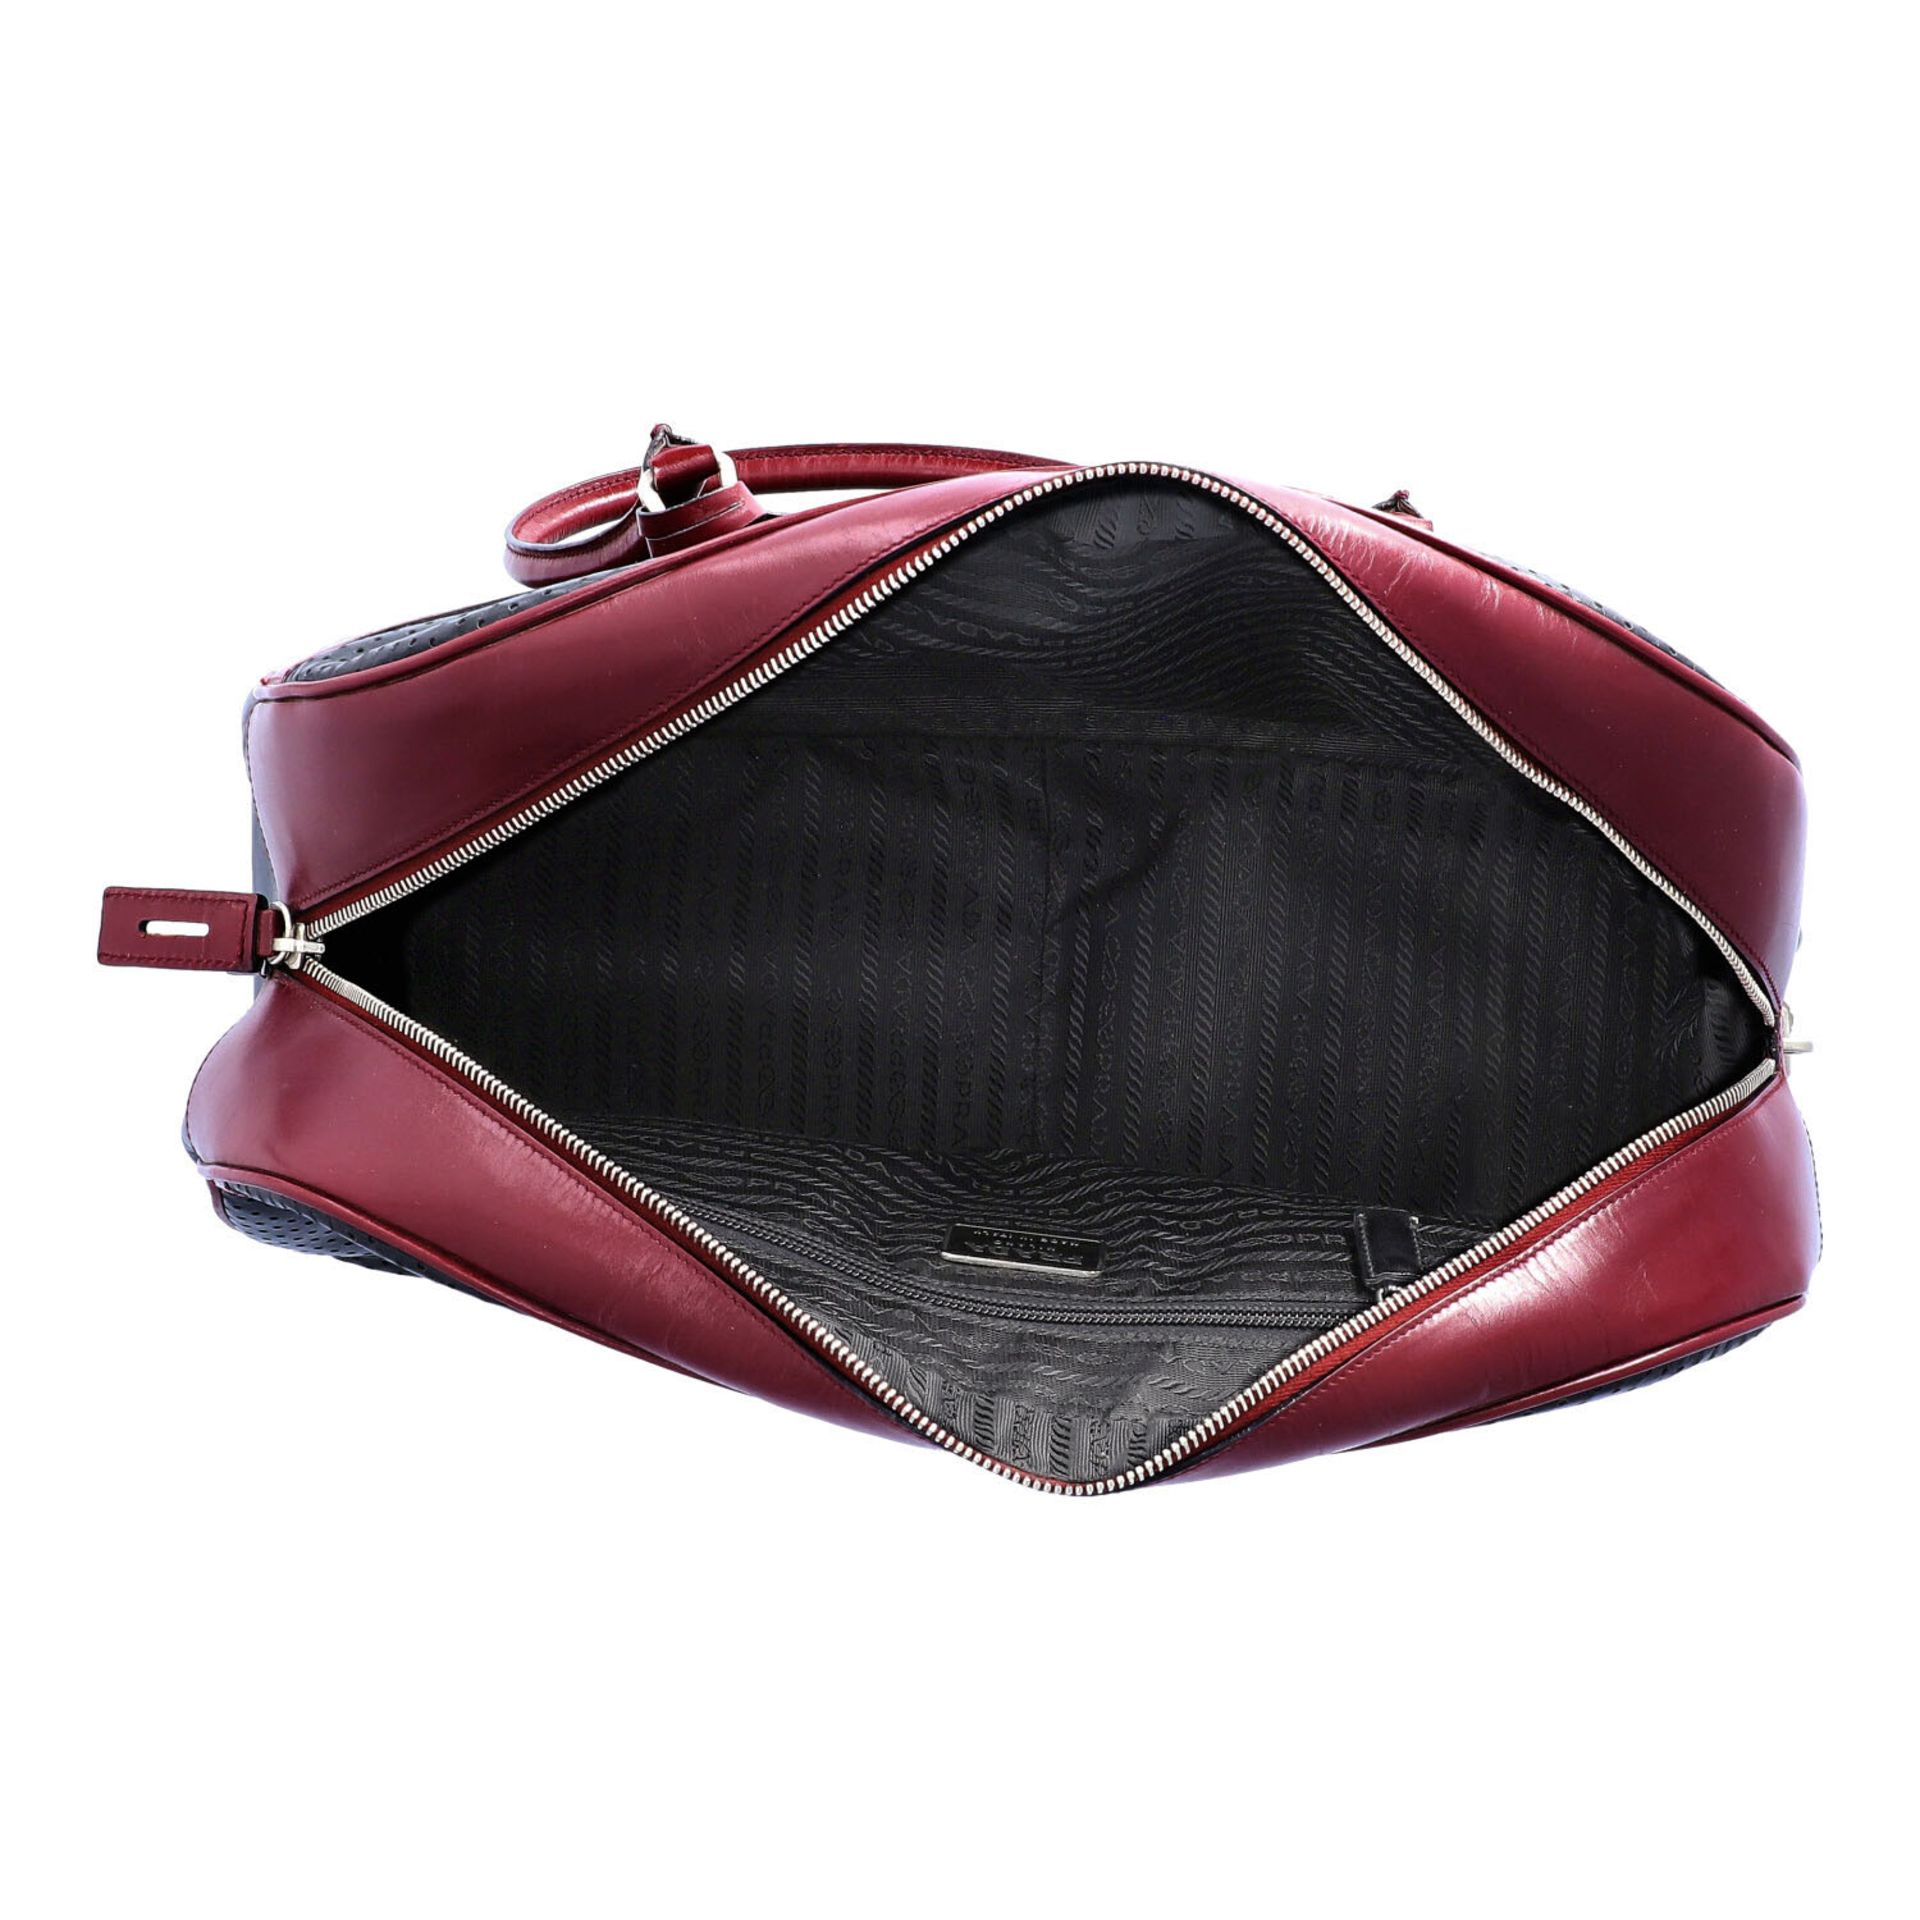 PRADA Handtasche. Glattleder in Schwarz und Bordeaux mit silberfarbener Hardware, umla - Bild 6 aus 8